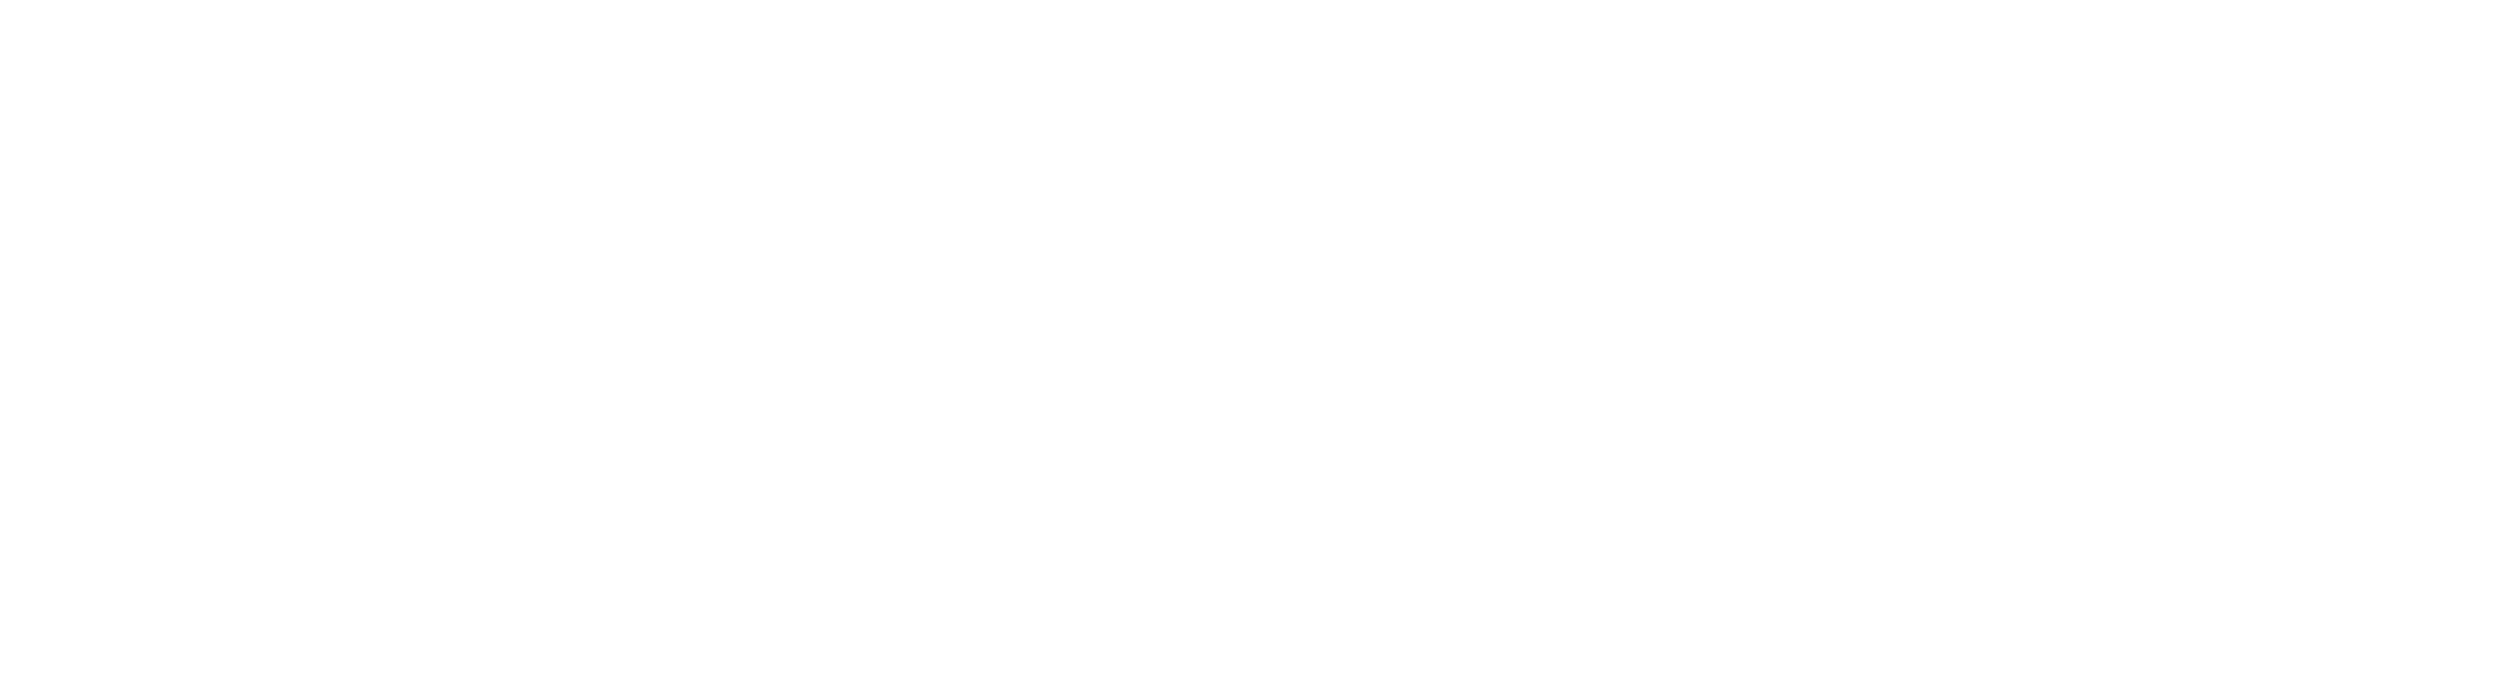 epiroc_logo_White.png